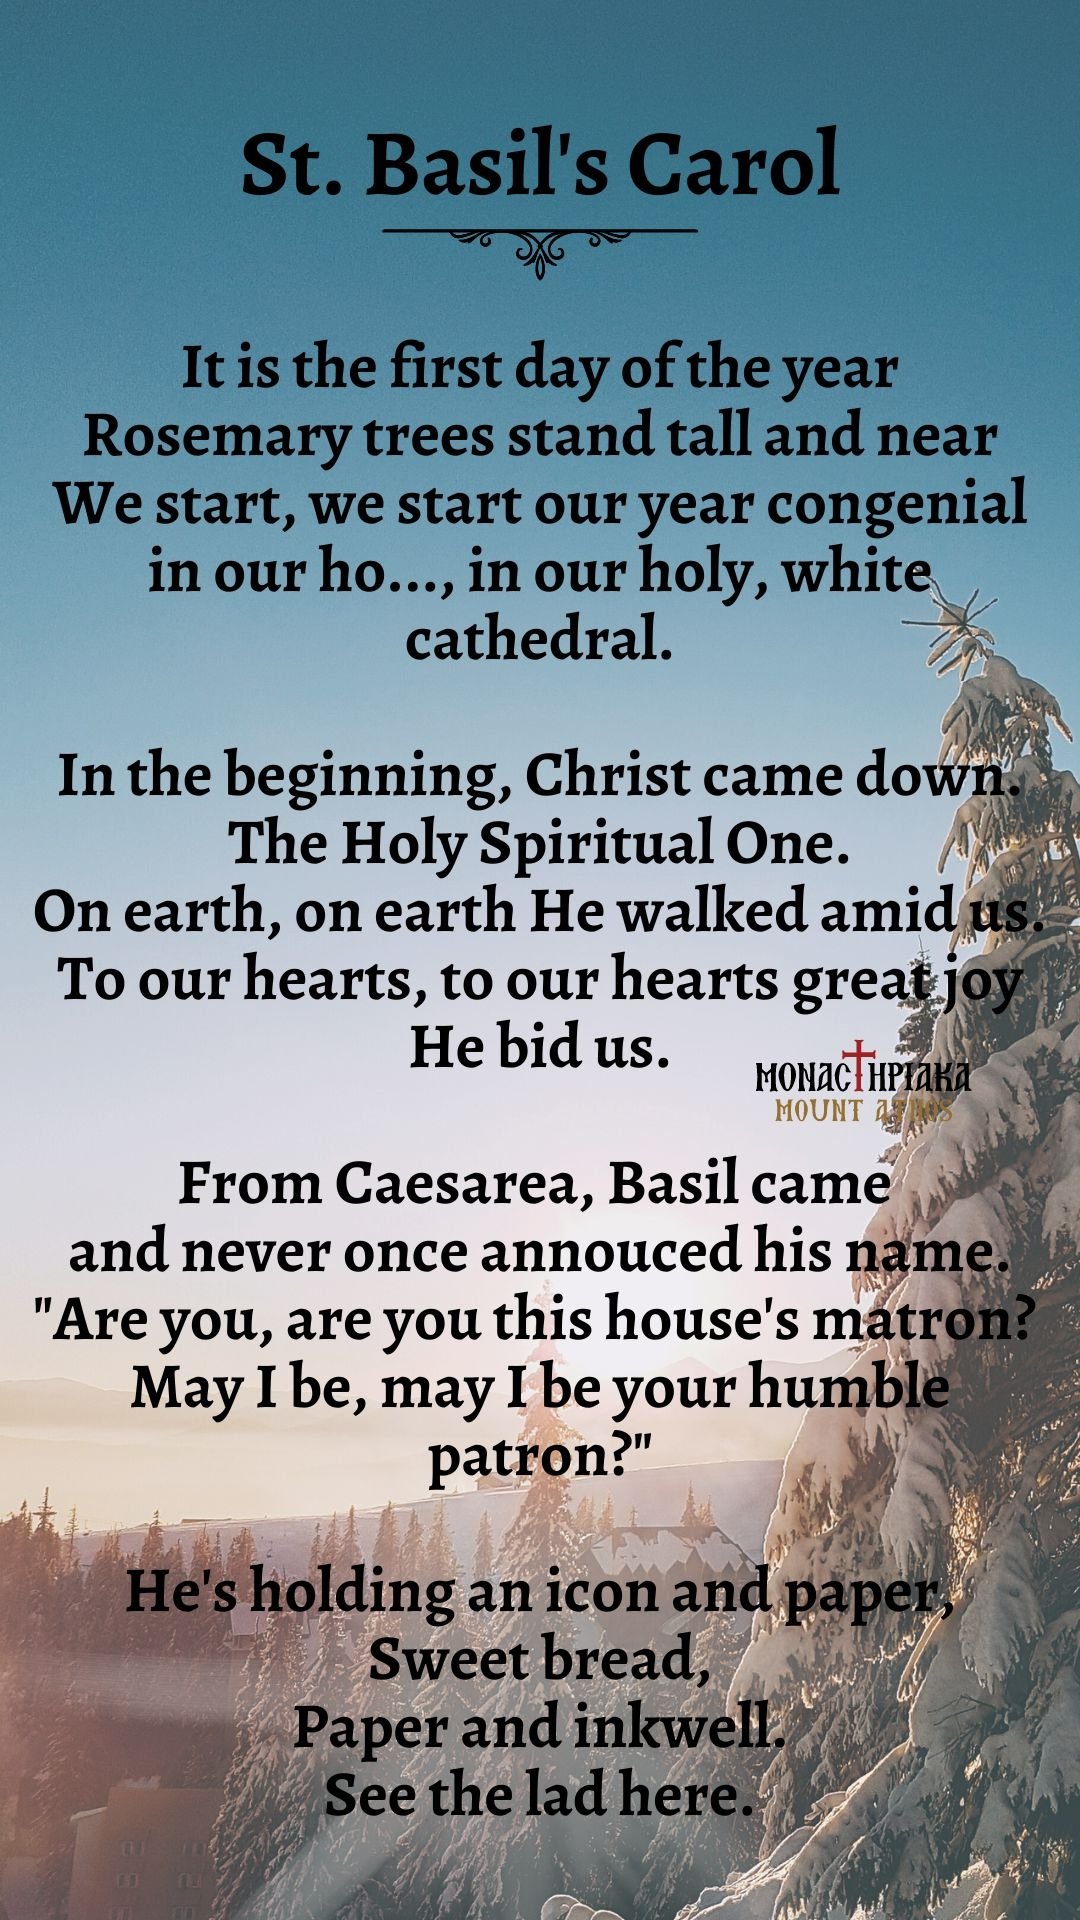 St. Basil's Carol